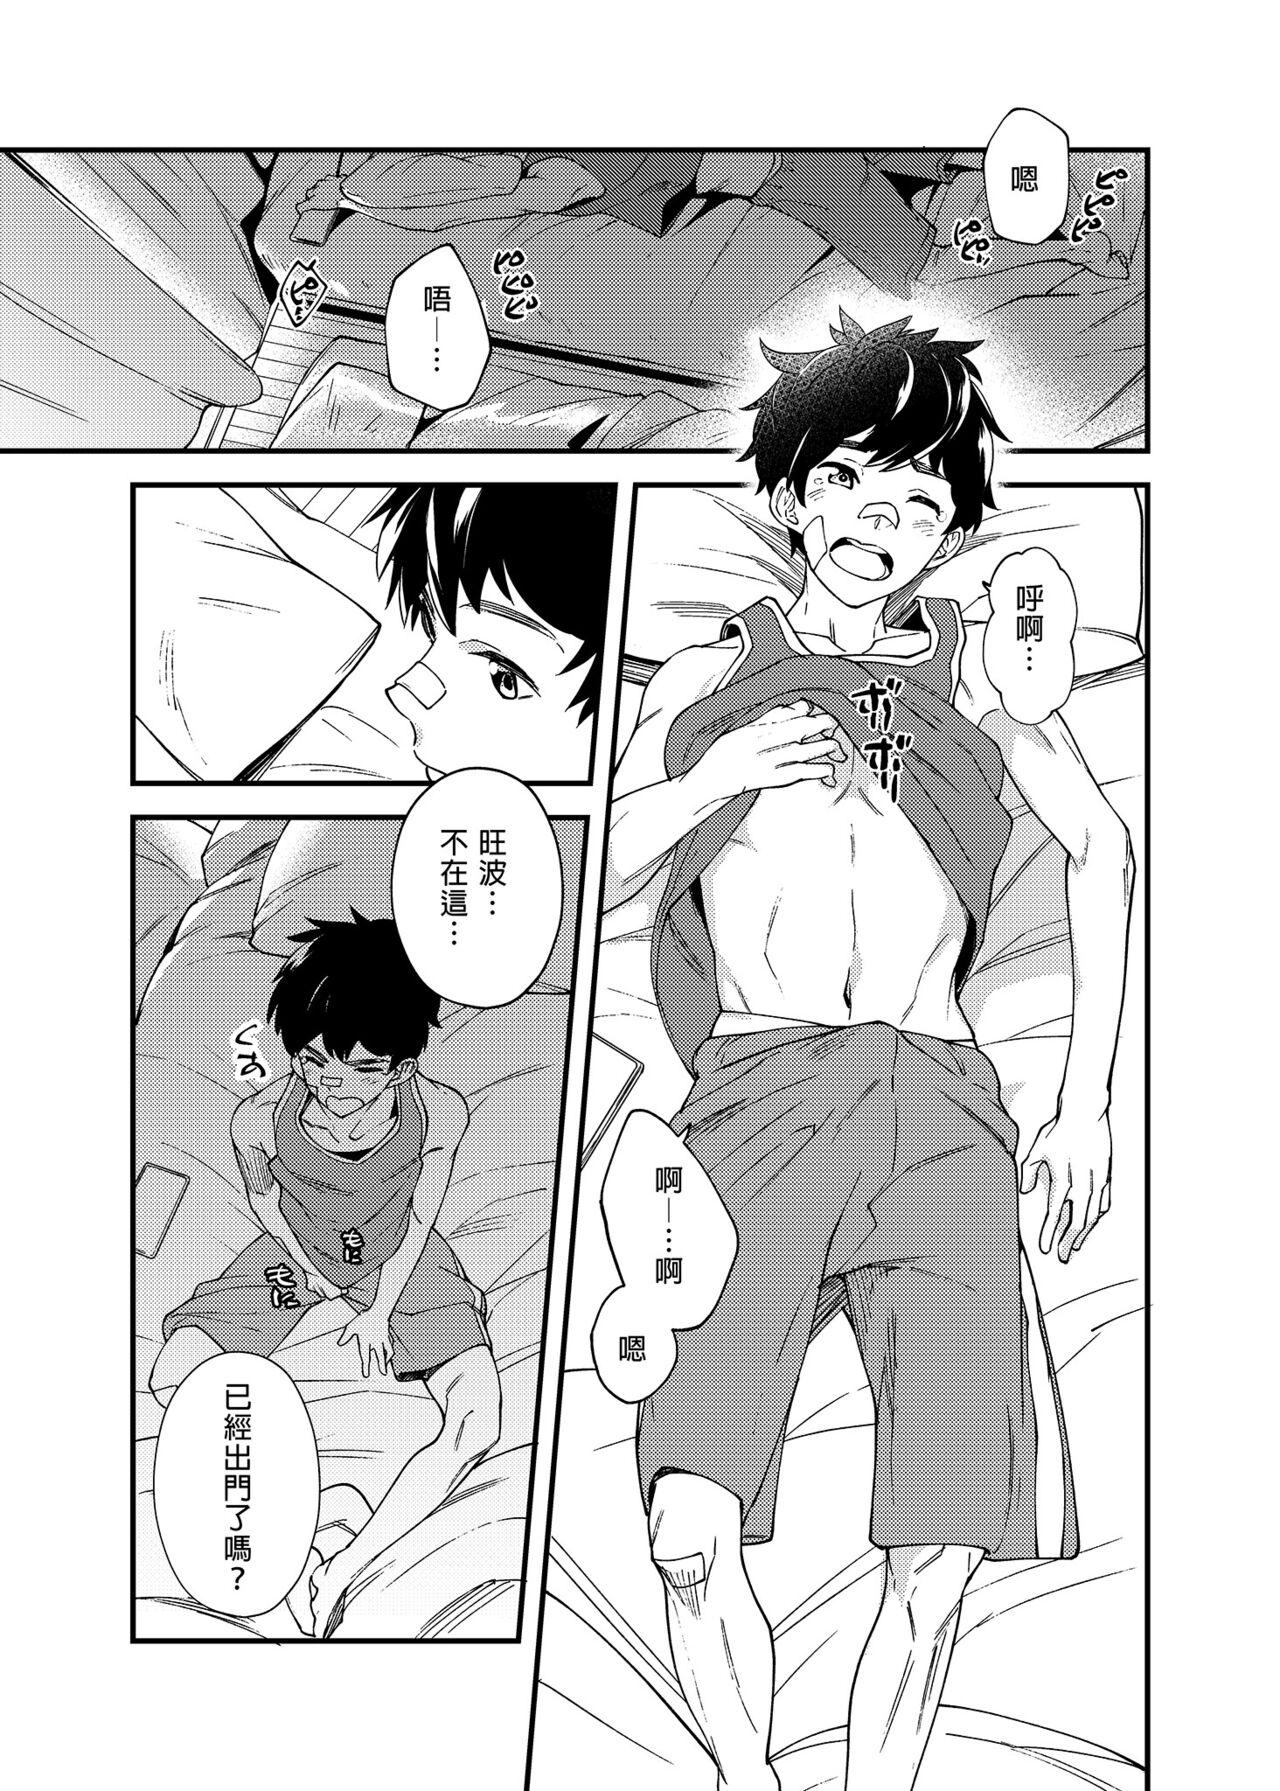 Self Na no ka tattara | 過了7天後 - Original Hymen - Page 4